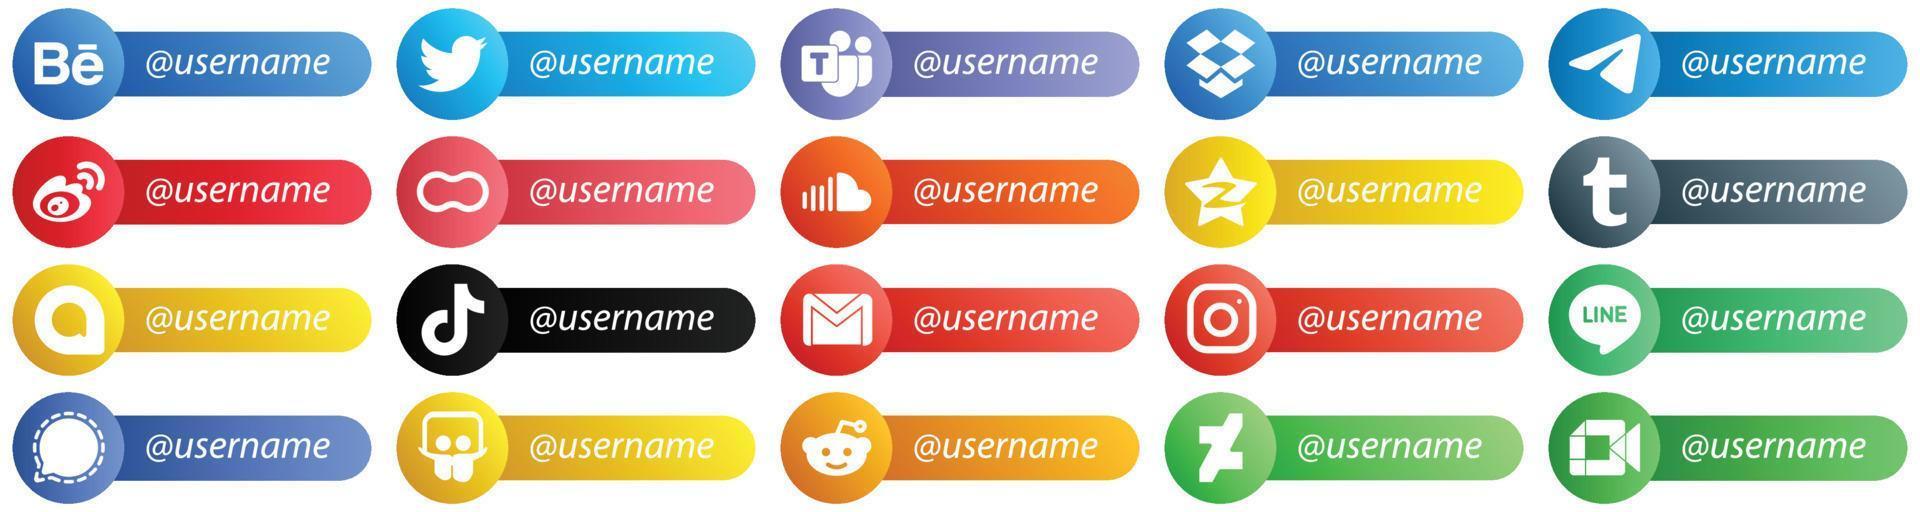 20 sígueme iconos de plataforma de red social con lugar para nombre de usuario como sonido. iconos de mujeres y madres. versátil y premium vector